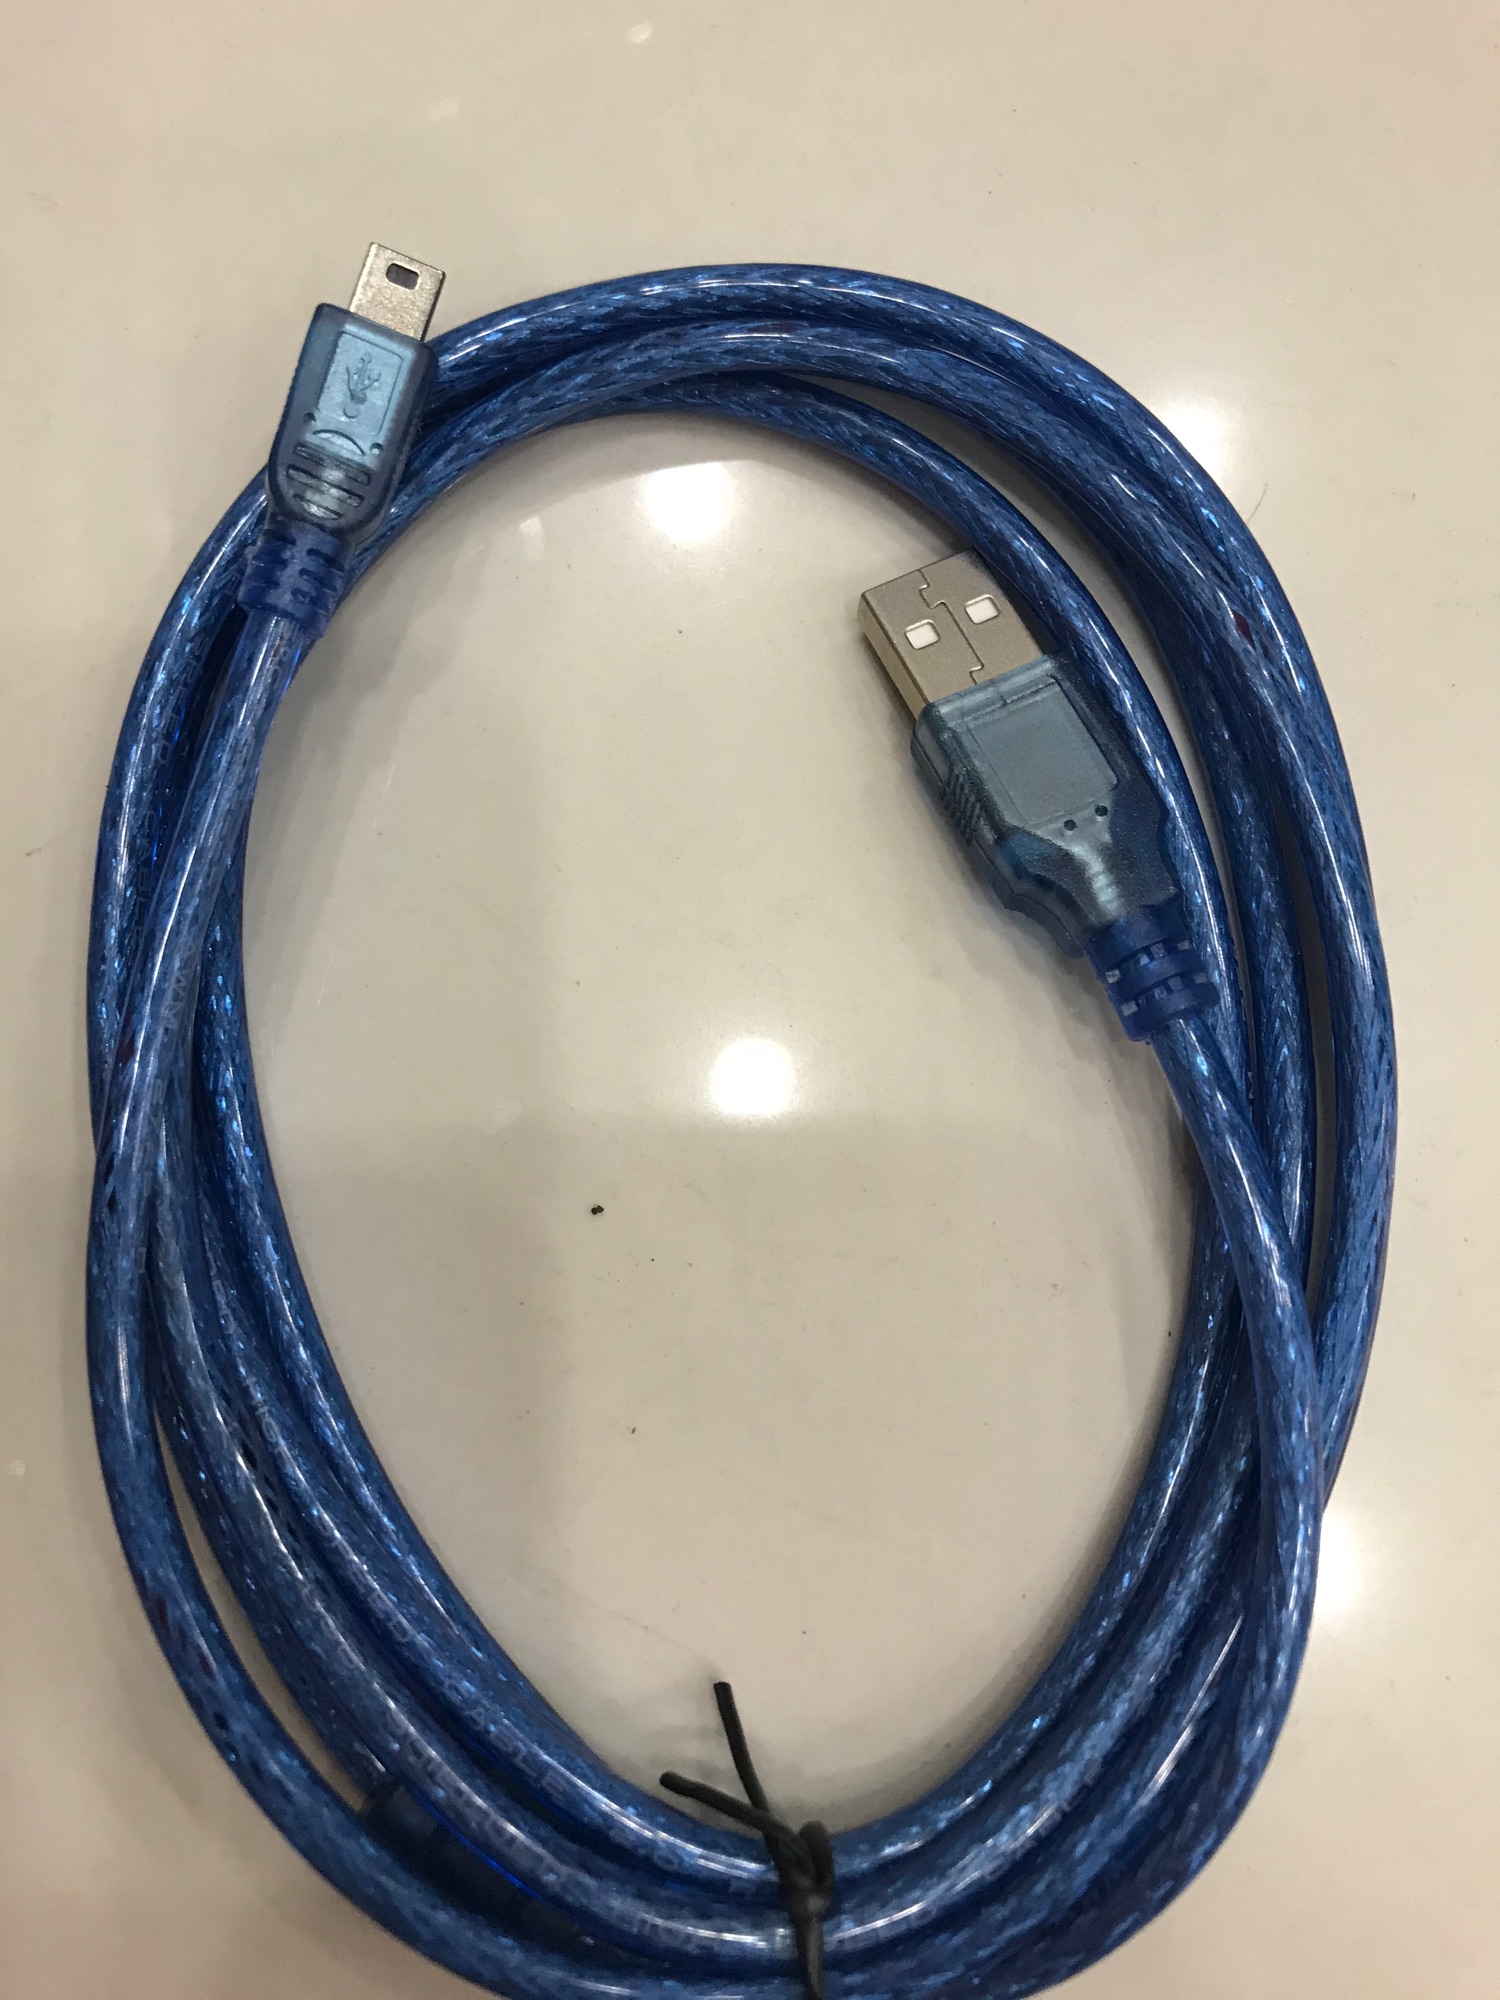 สาย USB 2.0 to mini USB 5 Pin สำหรับชาร์จและซิงค์ สายยาว 1.8/3/5เมตร (สีฟ้า)